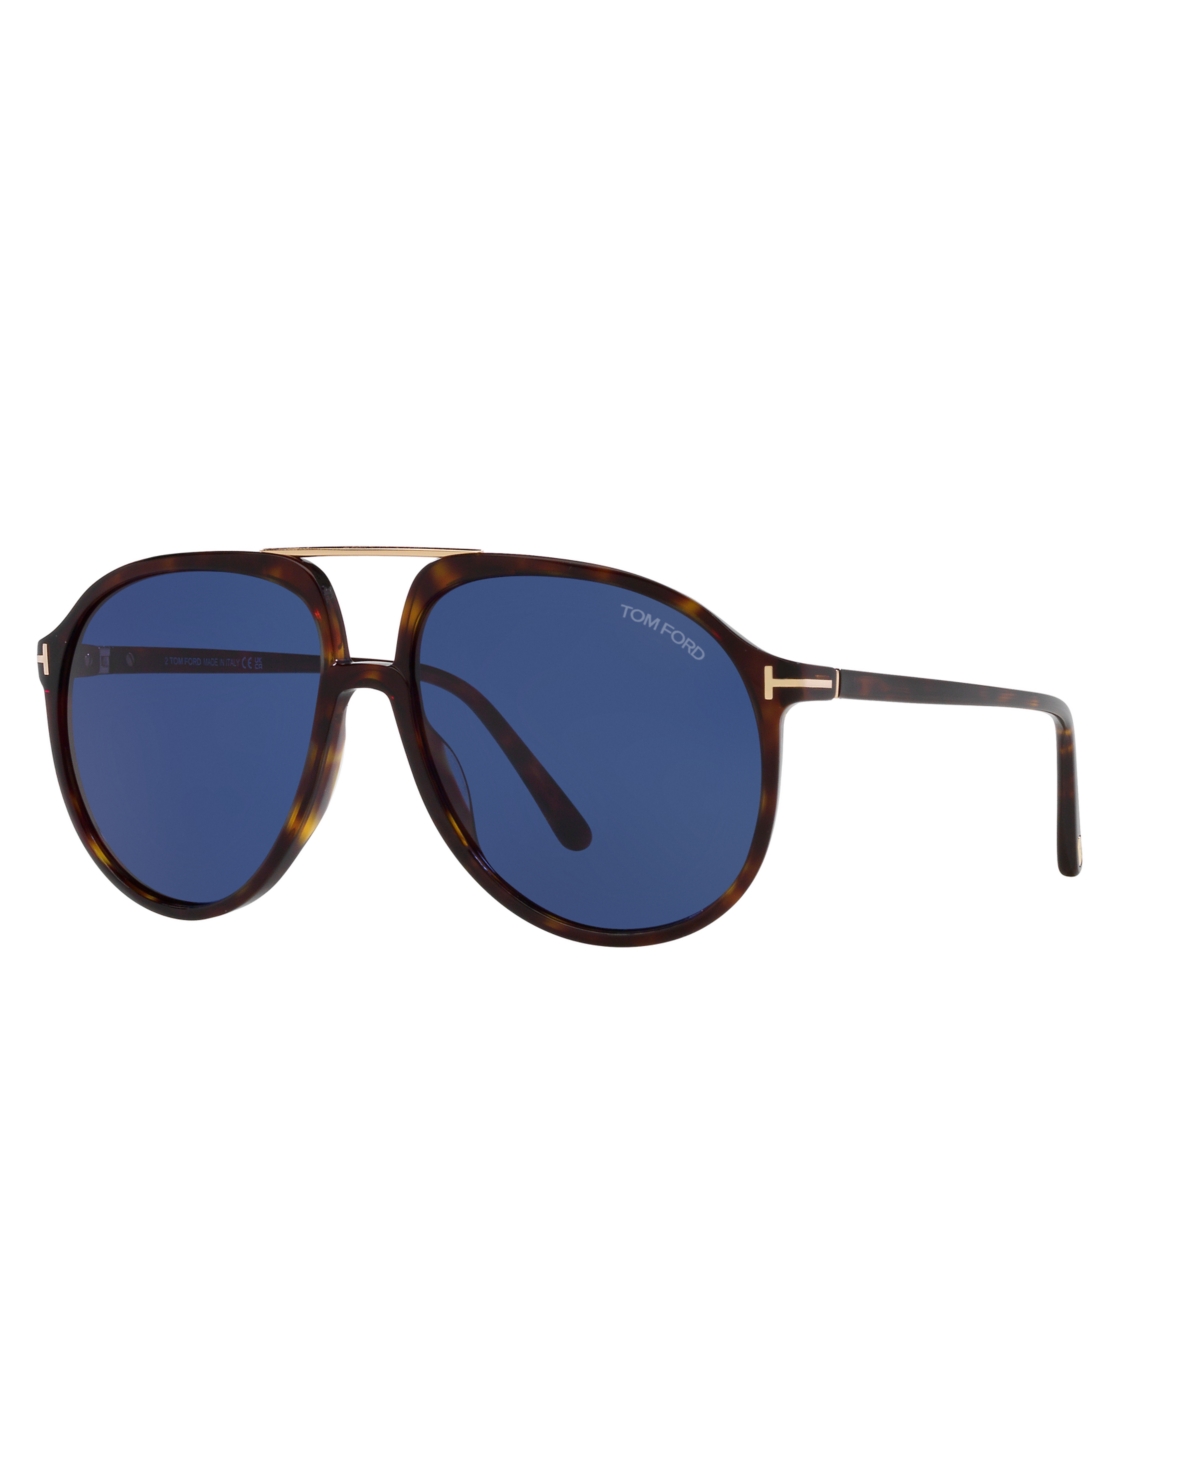 Men's Sunglasses, FT1079 - Blue